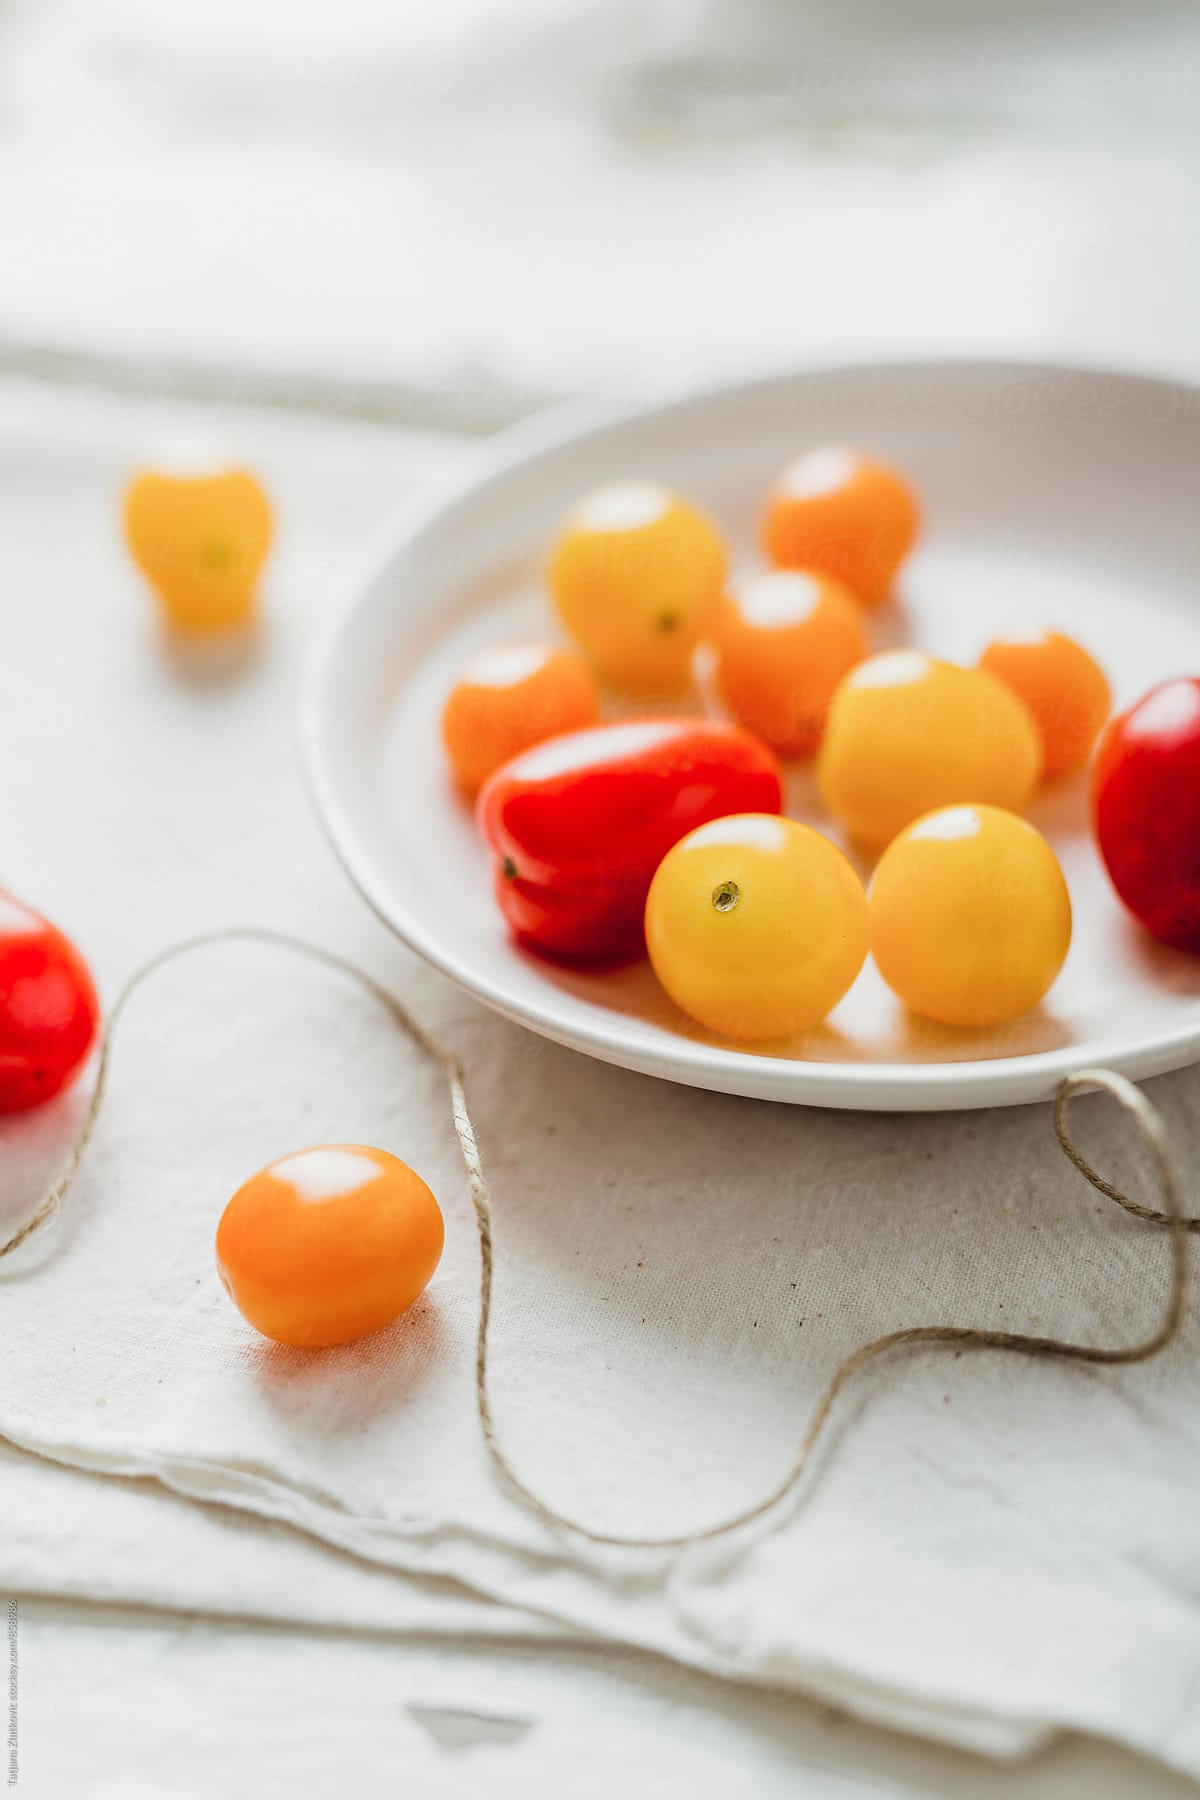 Yellow, orange and red cherry tomato